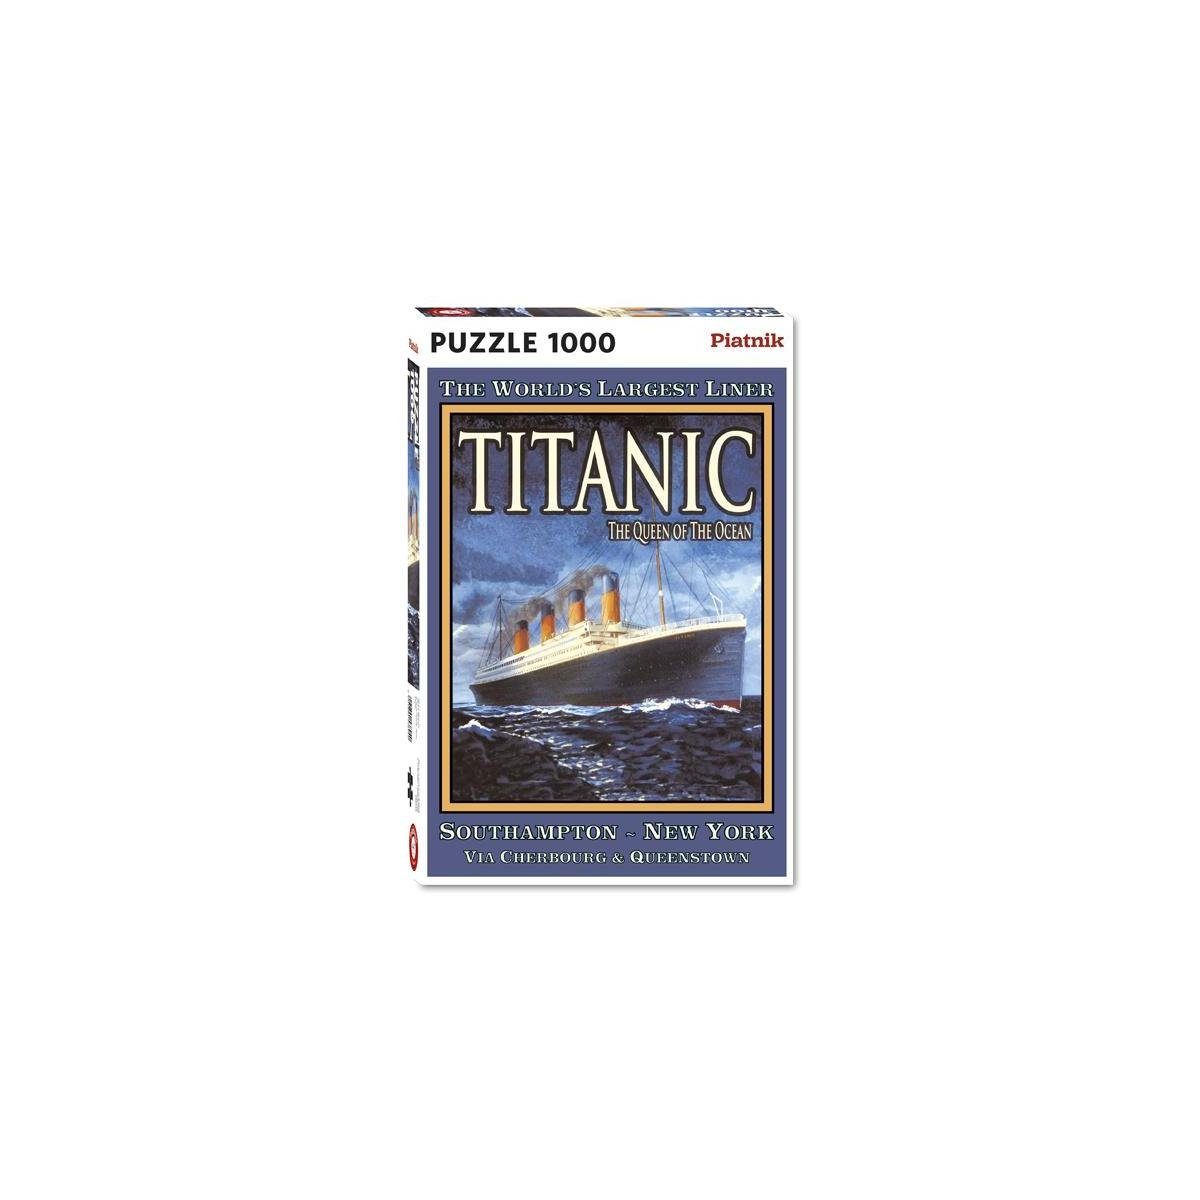 Puzzleteile Puzzle - 5389 Titanic - Teile, Piatnik 1000 1000 Puzzle,